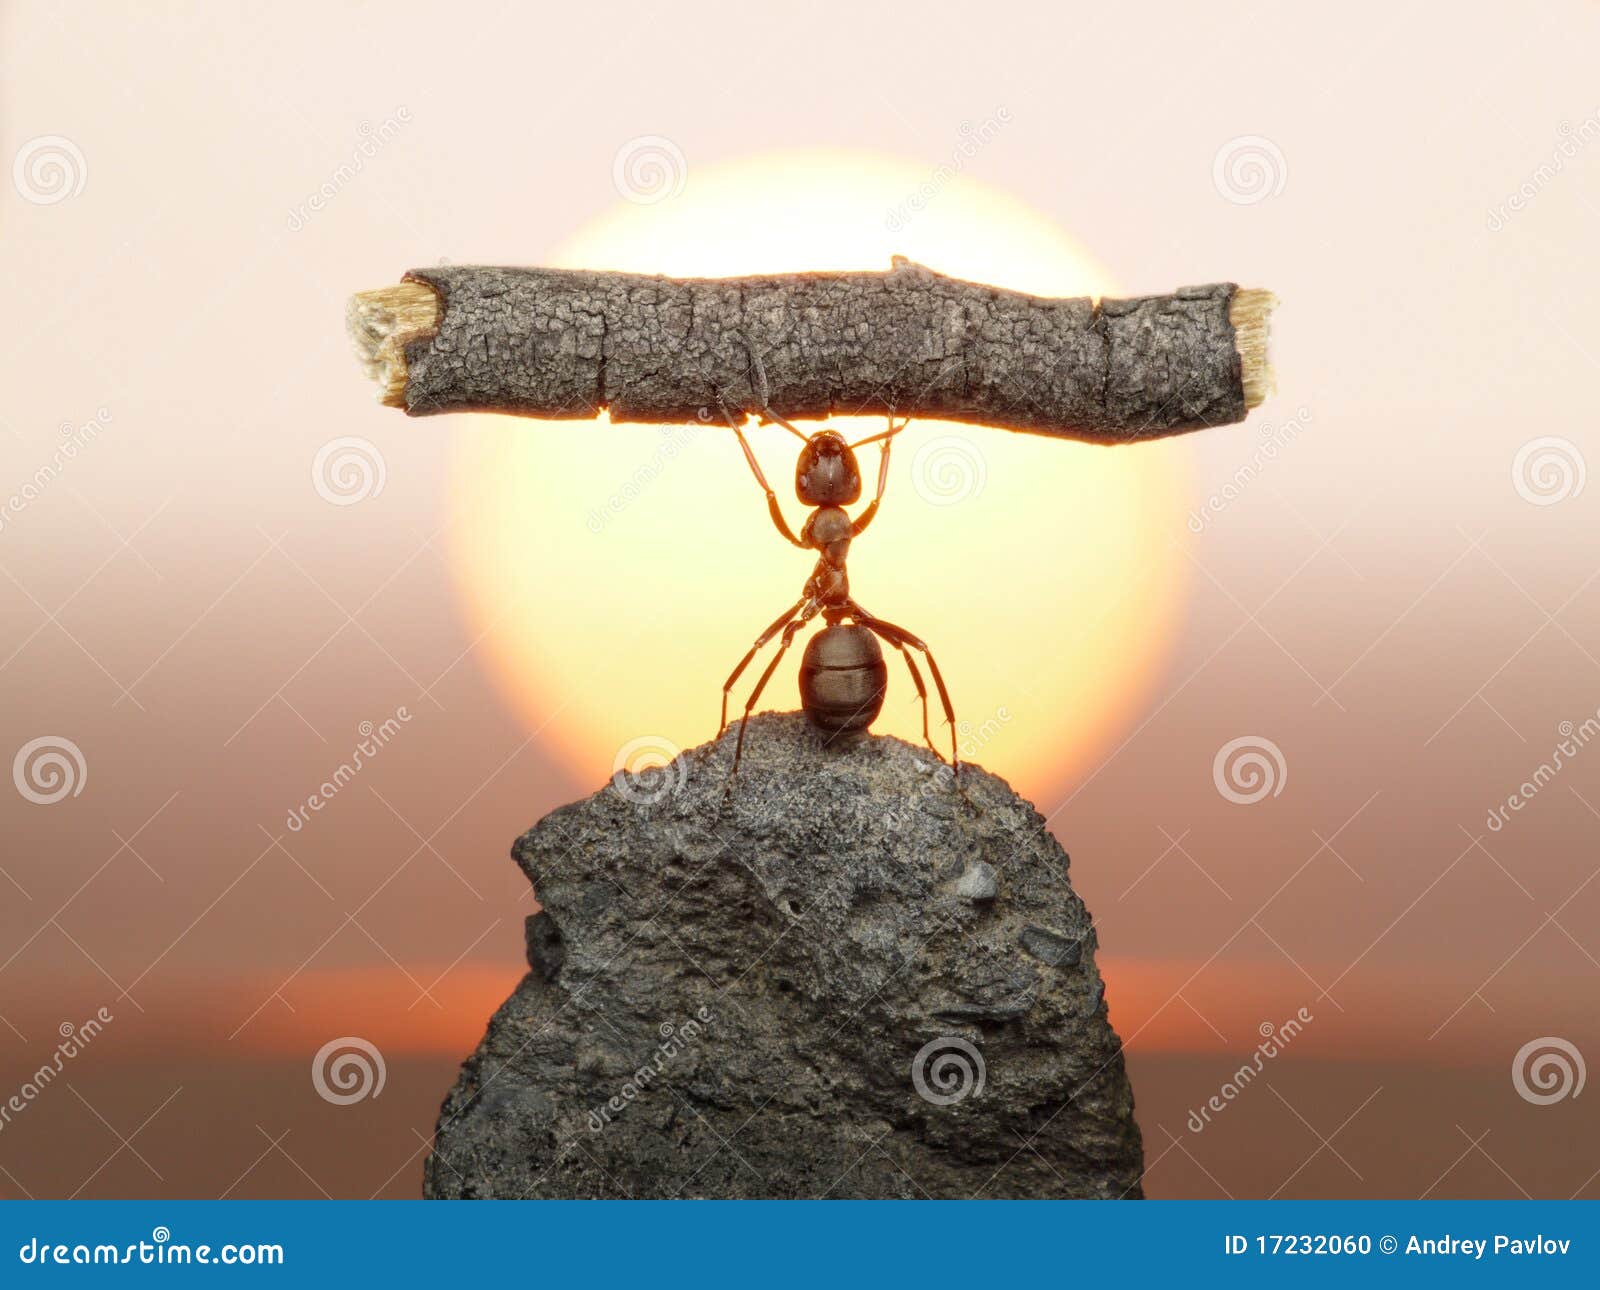 statue of labour, ants civilization